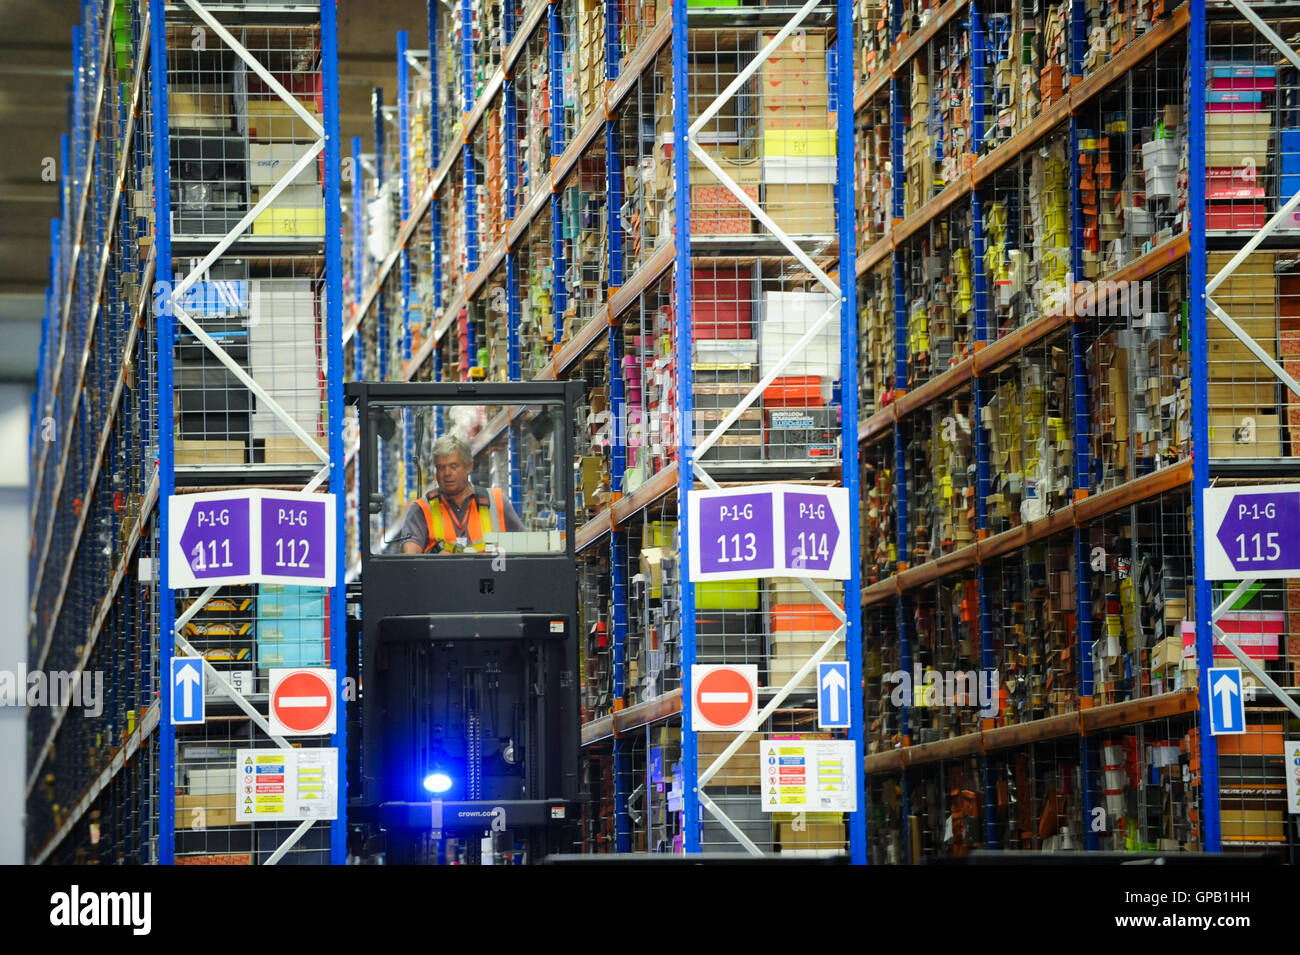 Amazon warehouse uk -Fotos und -Bildmaterial in hoher Auflösung – Alamy